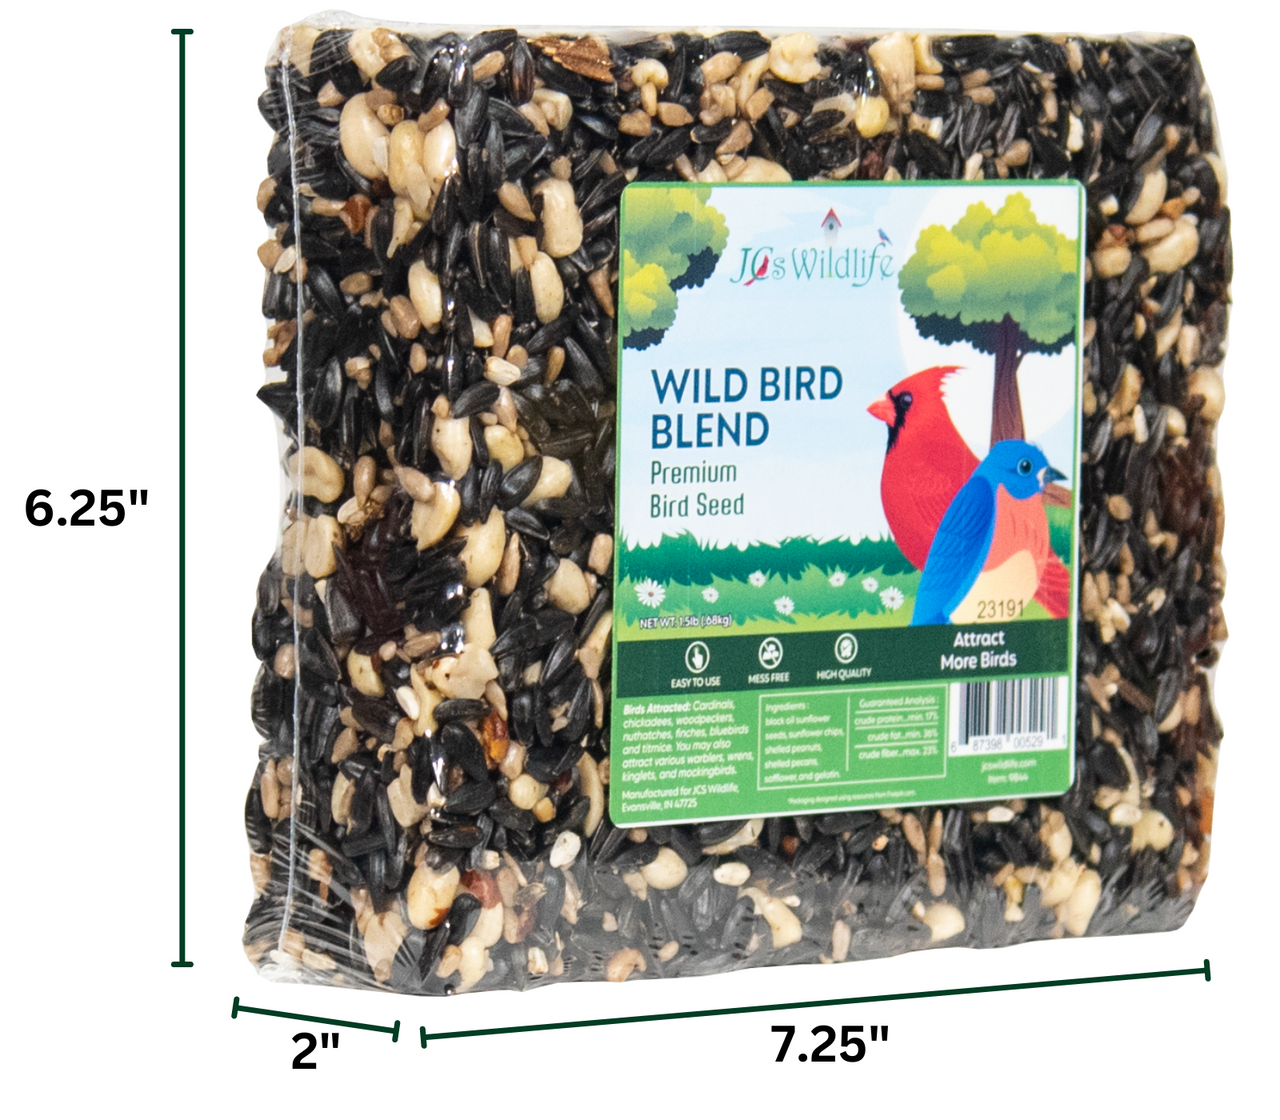 JCs Wildlife Wild Bird Blend Premium 6" Cake (8 Count)